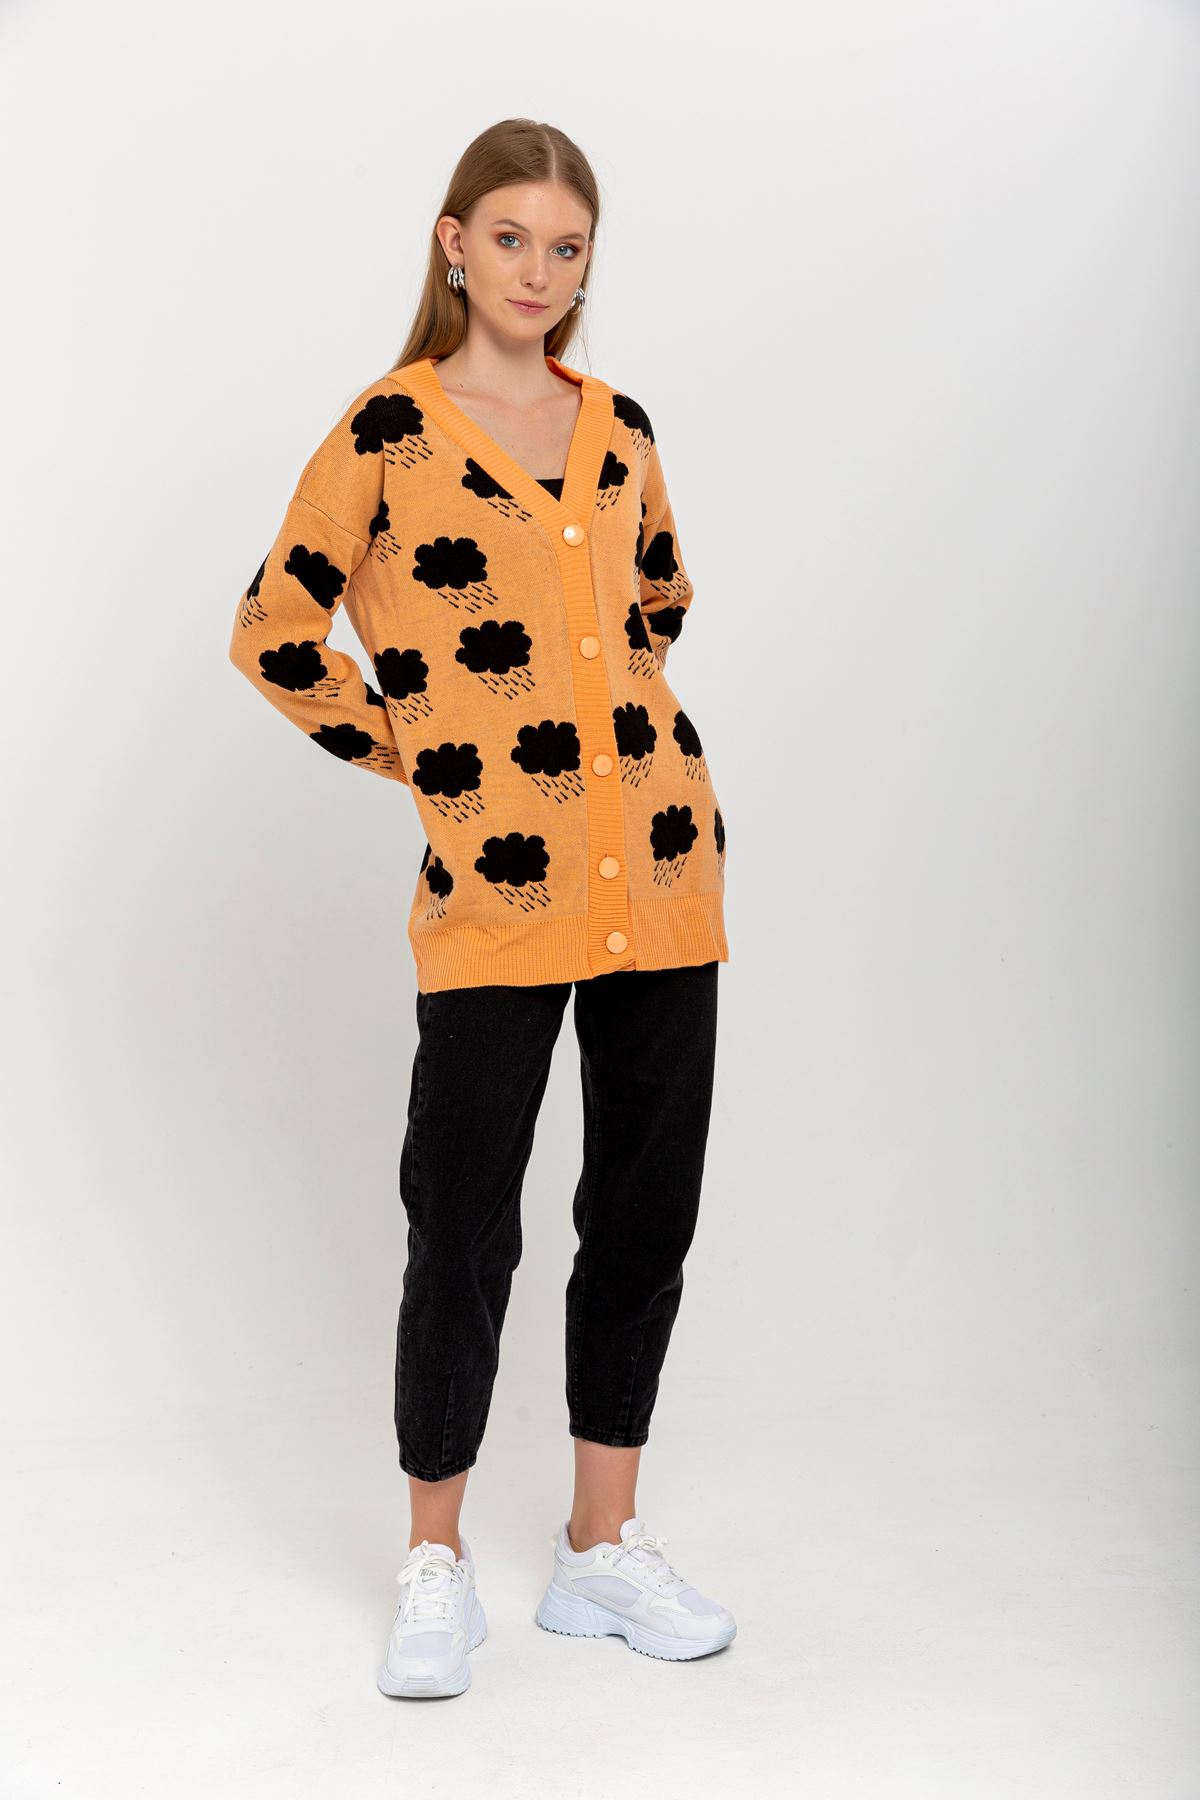 Knitwear Fabric Long Sleeve V-Neck Cloud Print Women'S Knitwear-Orange